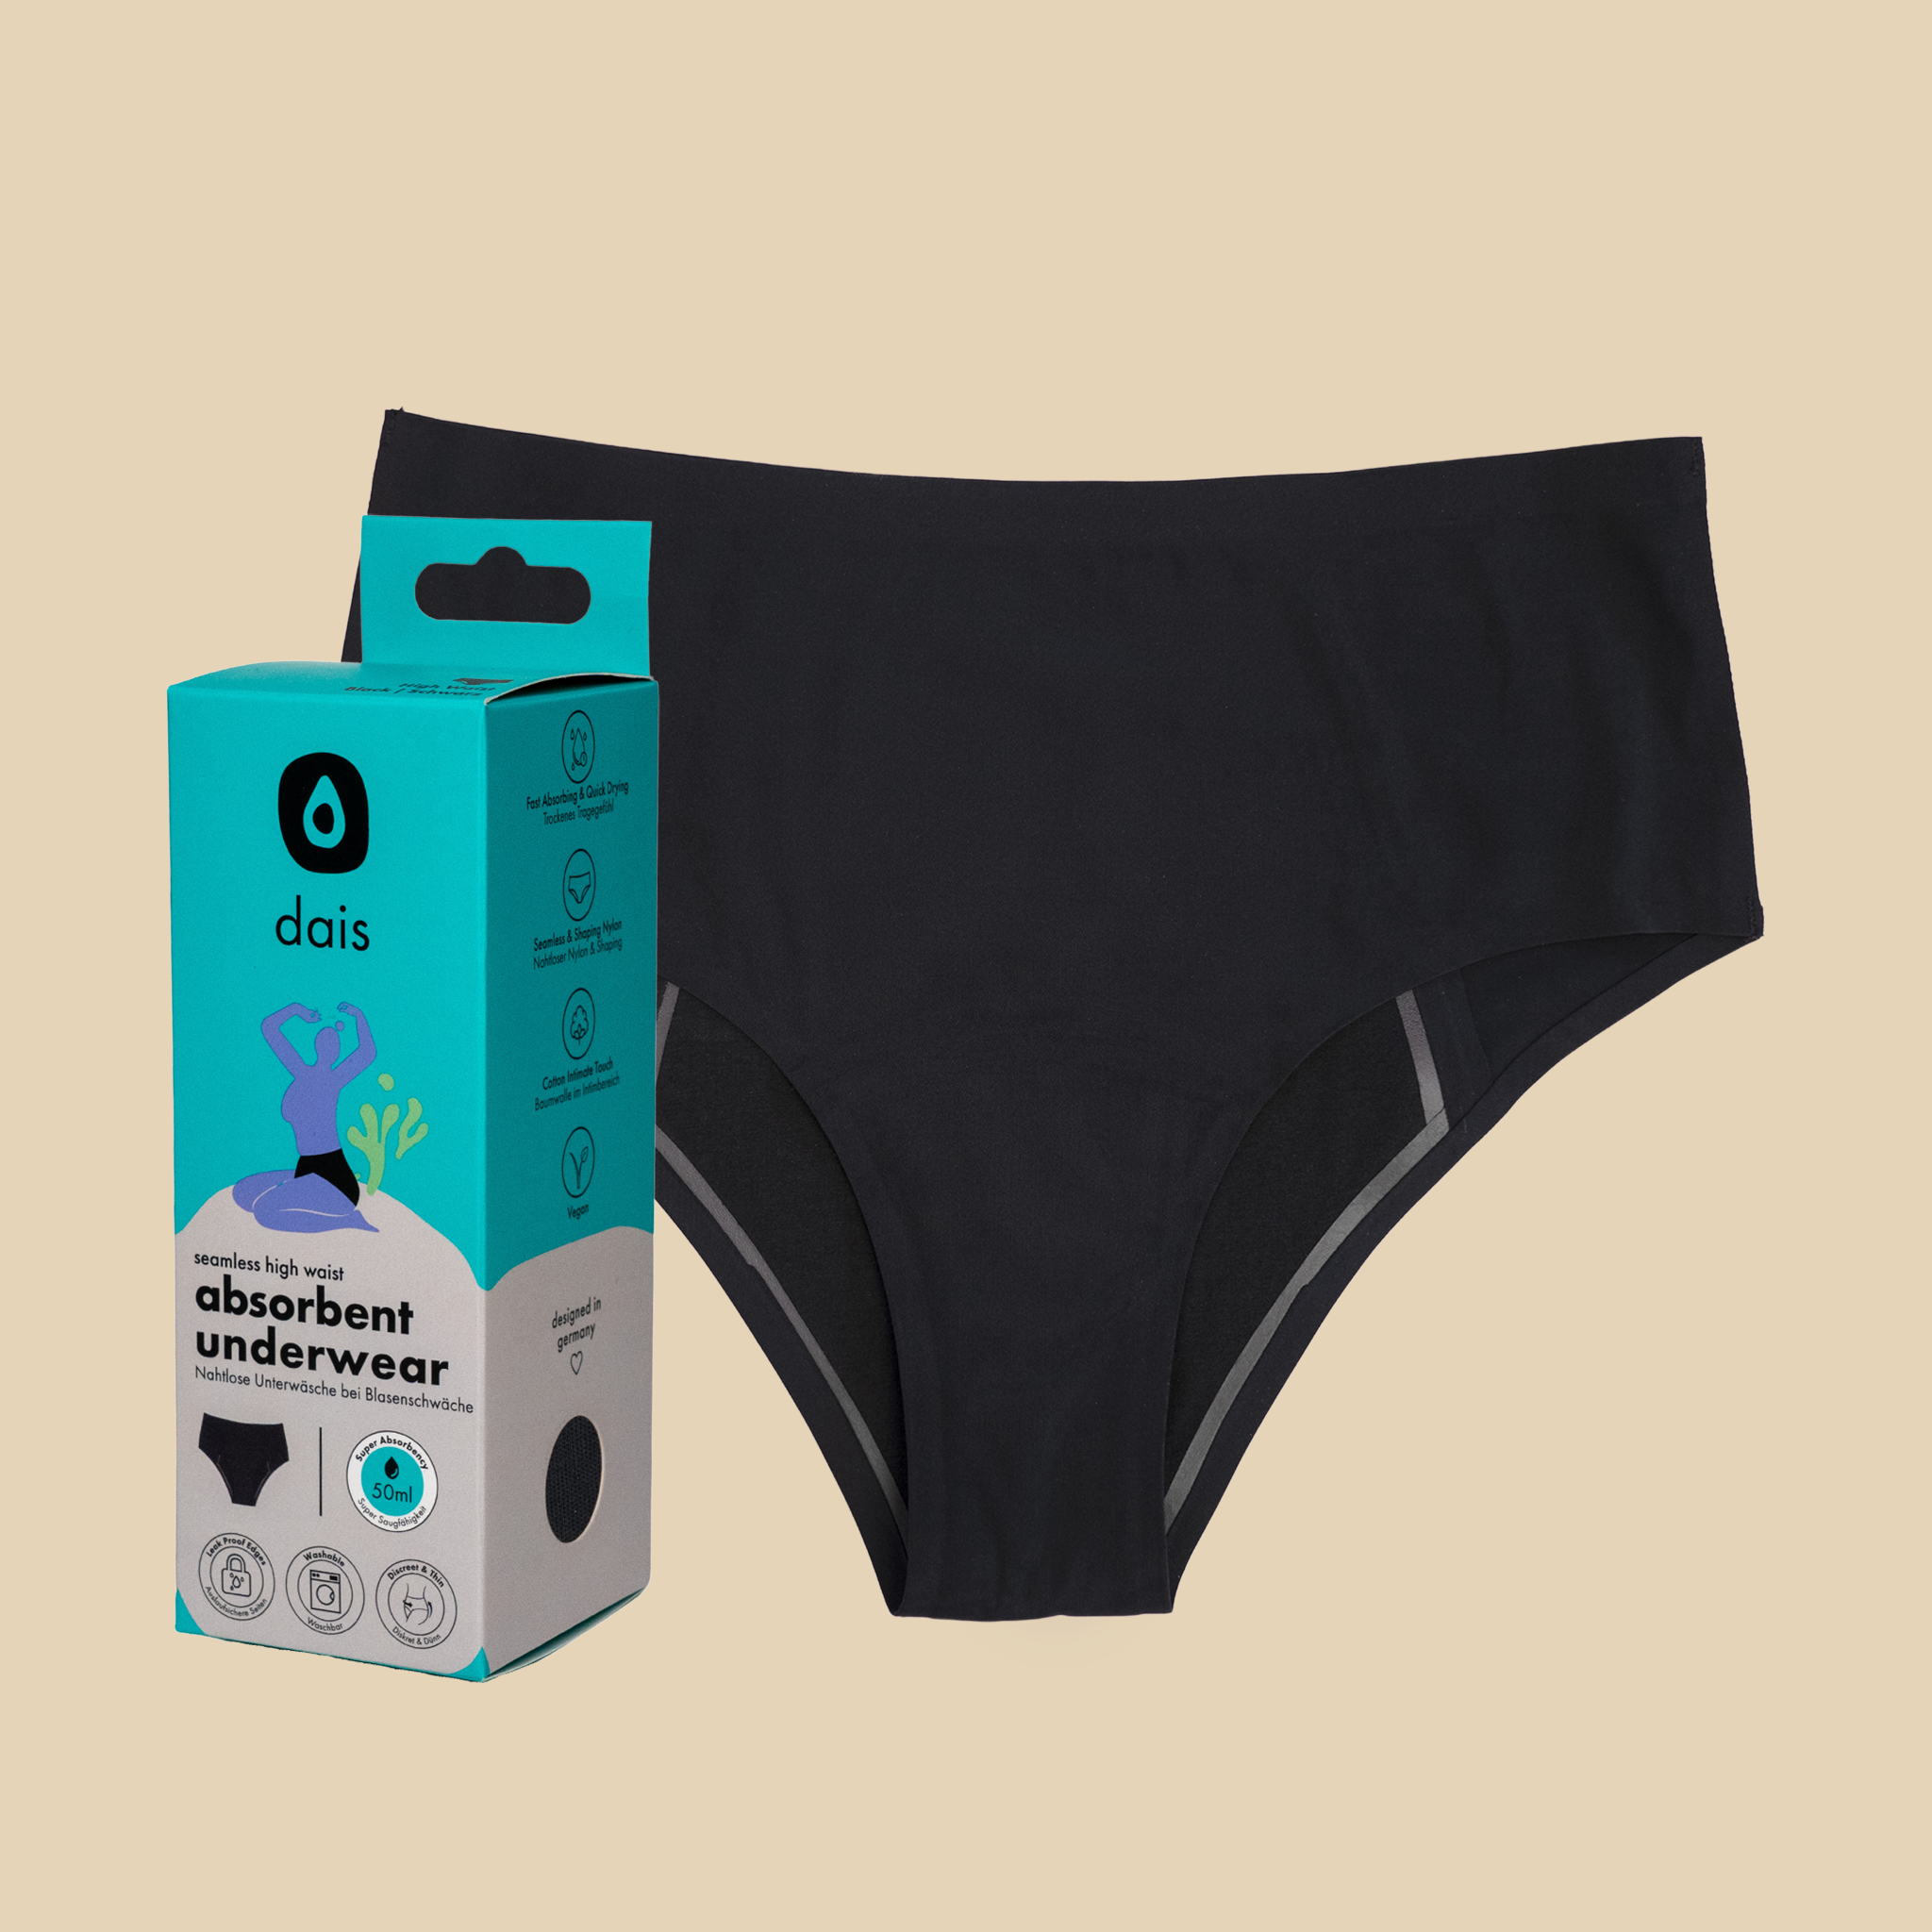 dais absorbent bladder leak underwear shown with modern packaging.